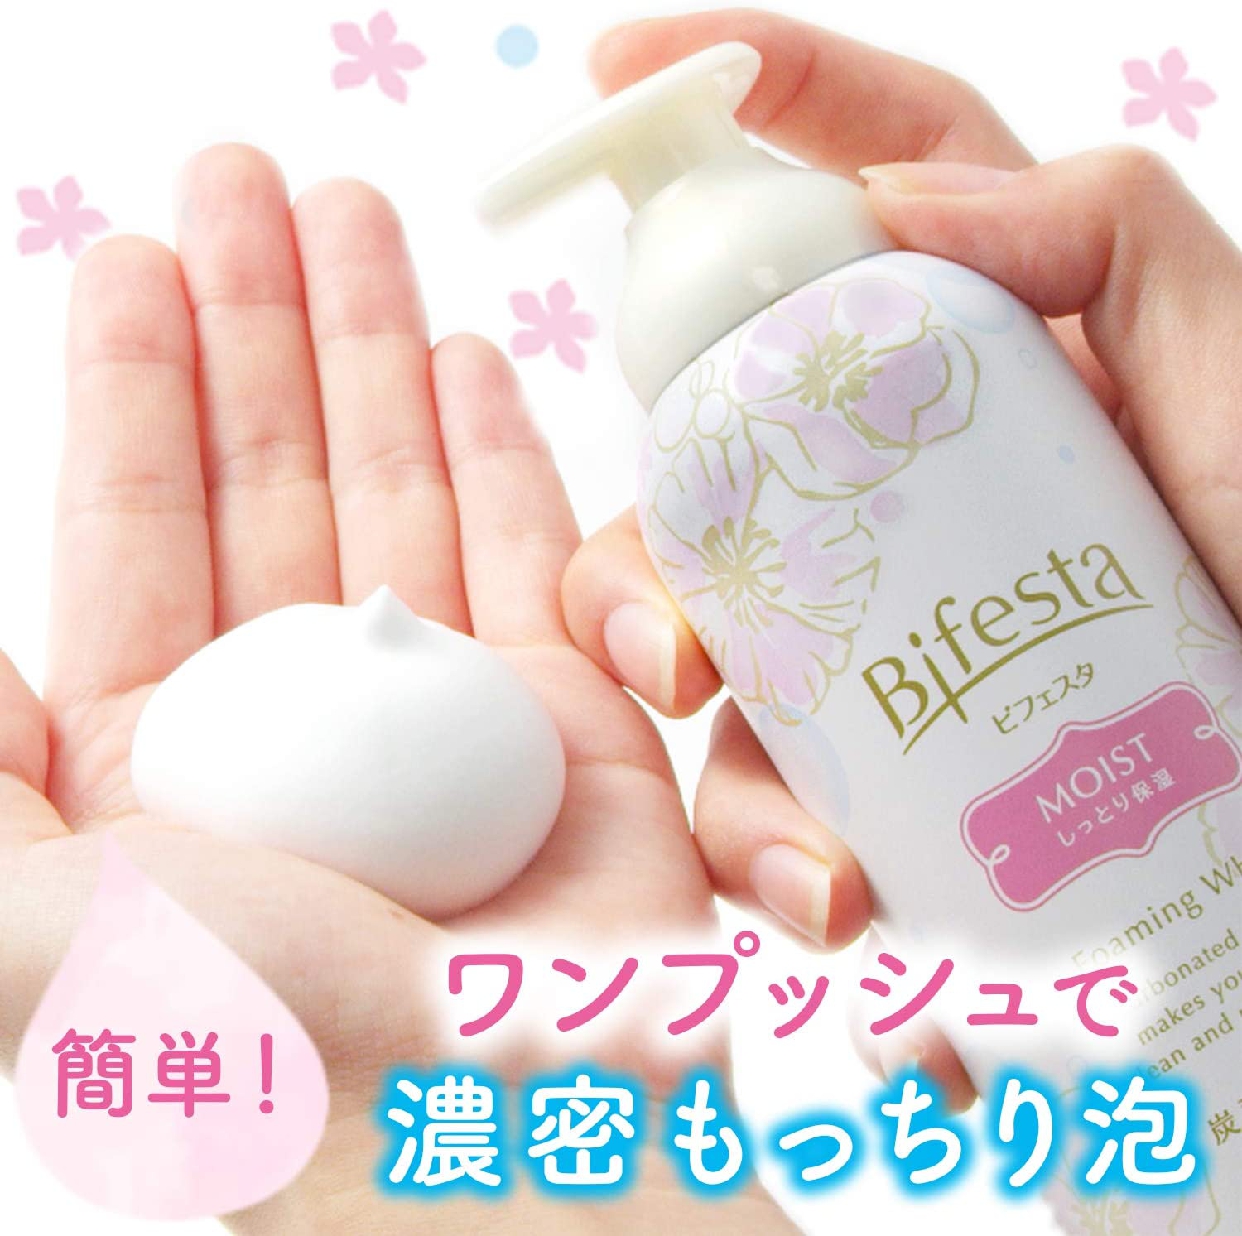 Bifesta(ビフェスタ) 泡洗顔 モイストの商品画像3 